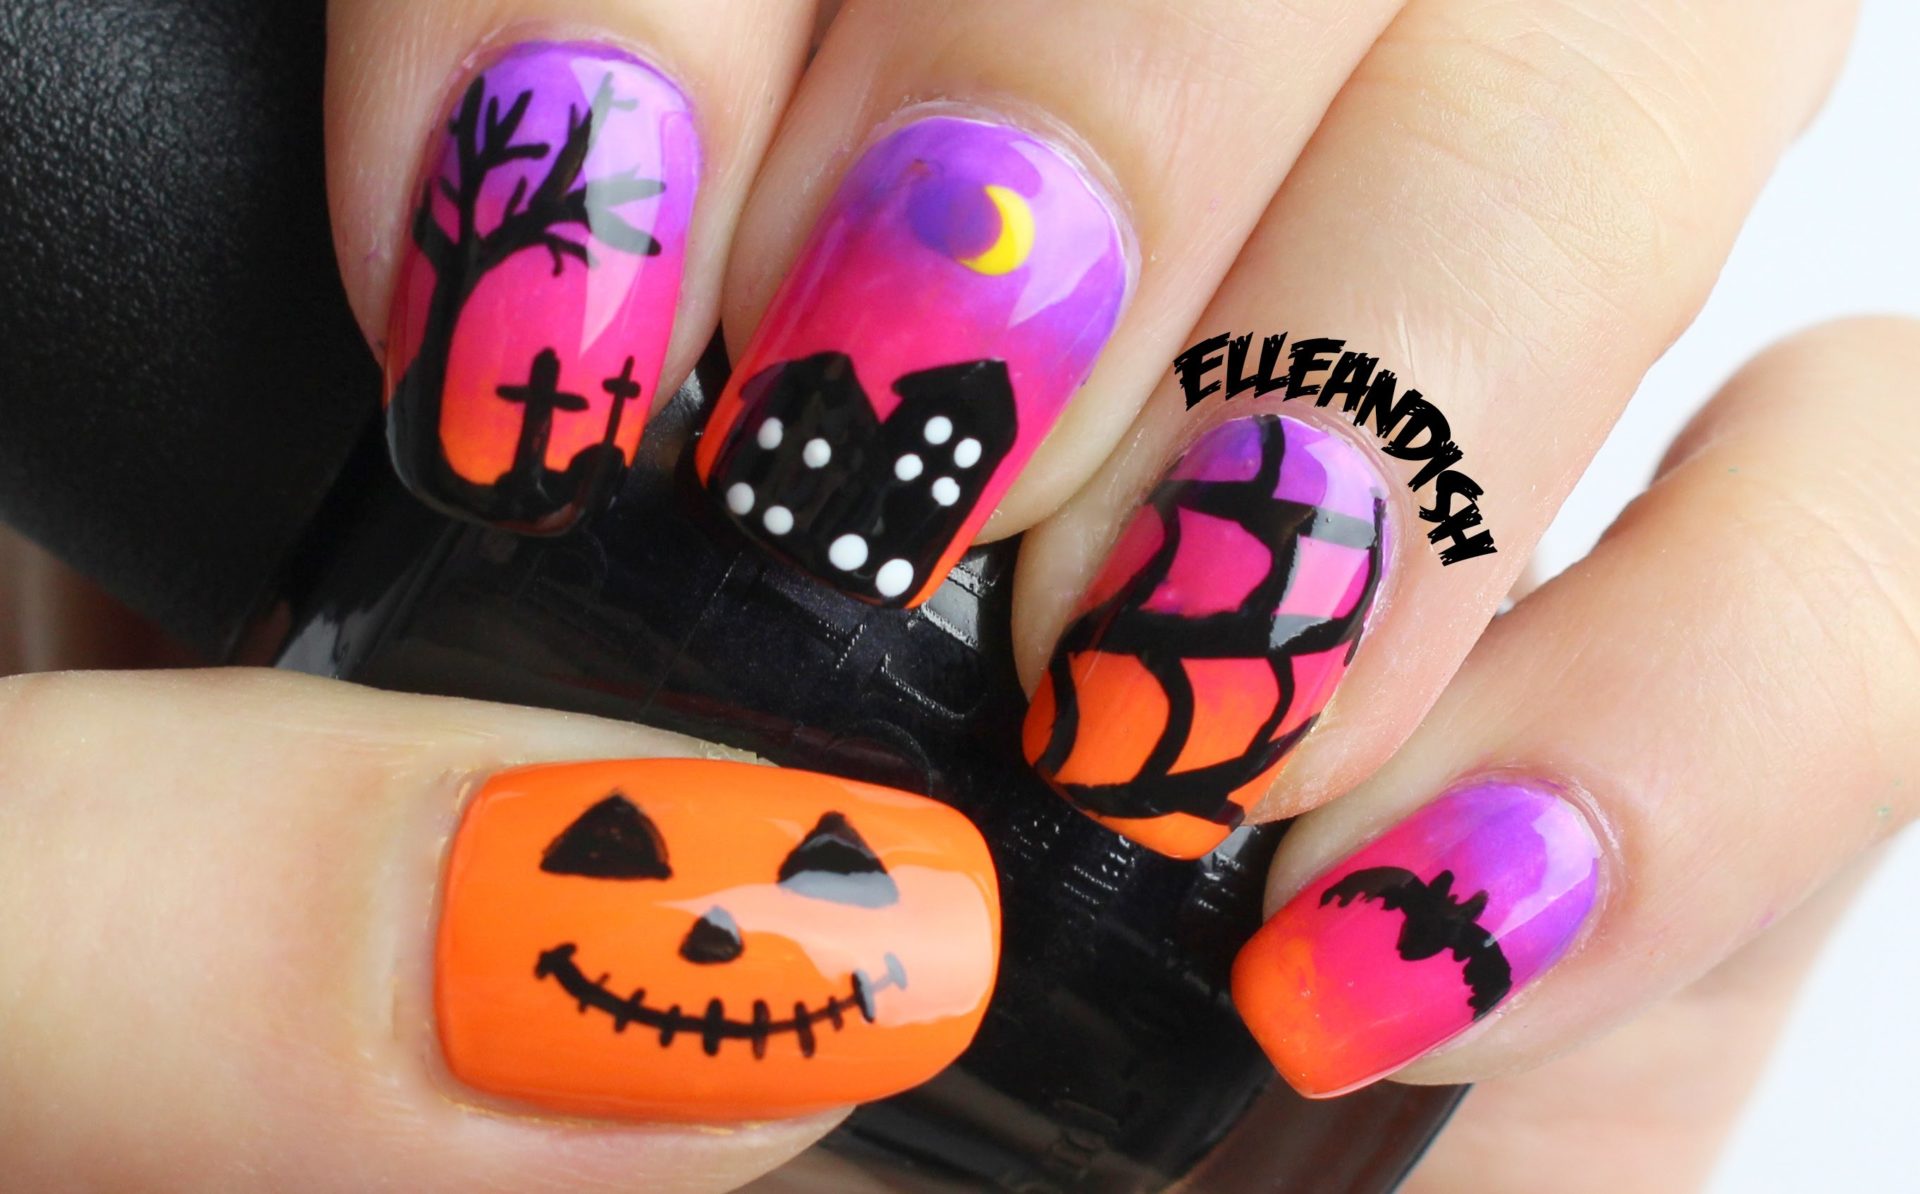 3. Cute Halloween Nail Designs - wide 9